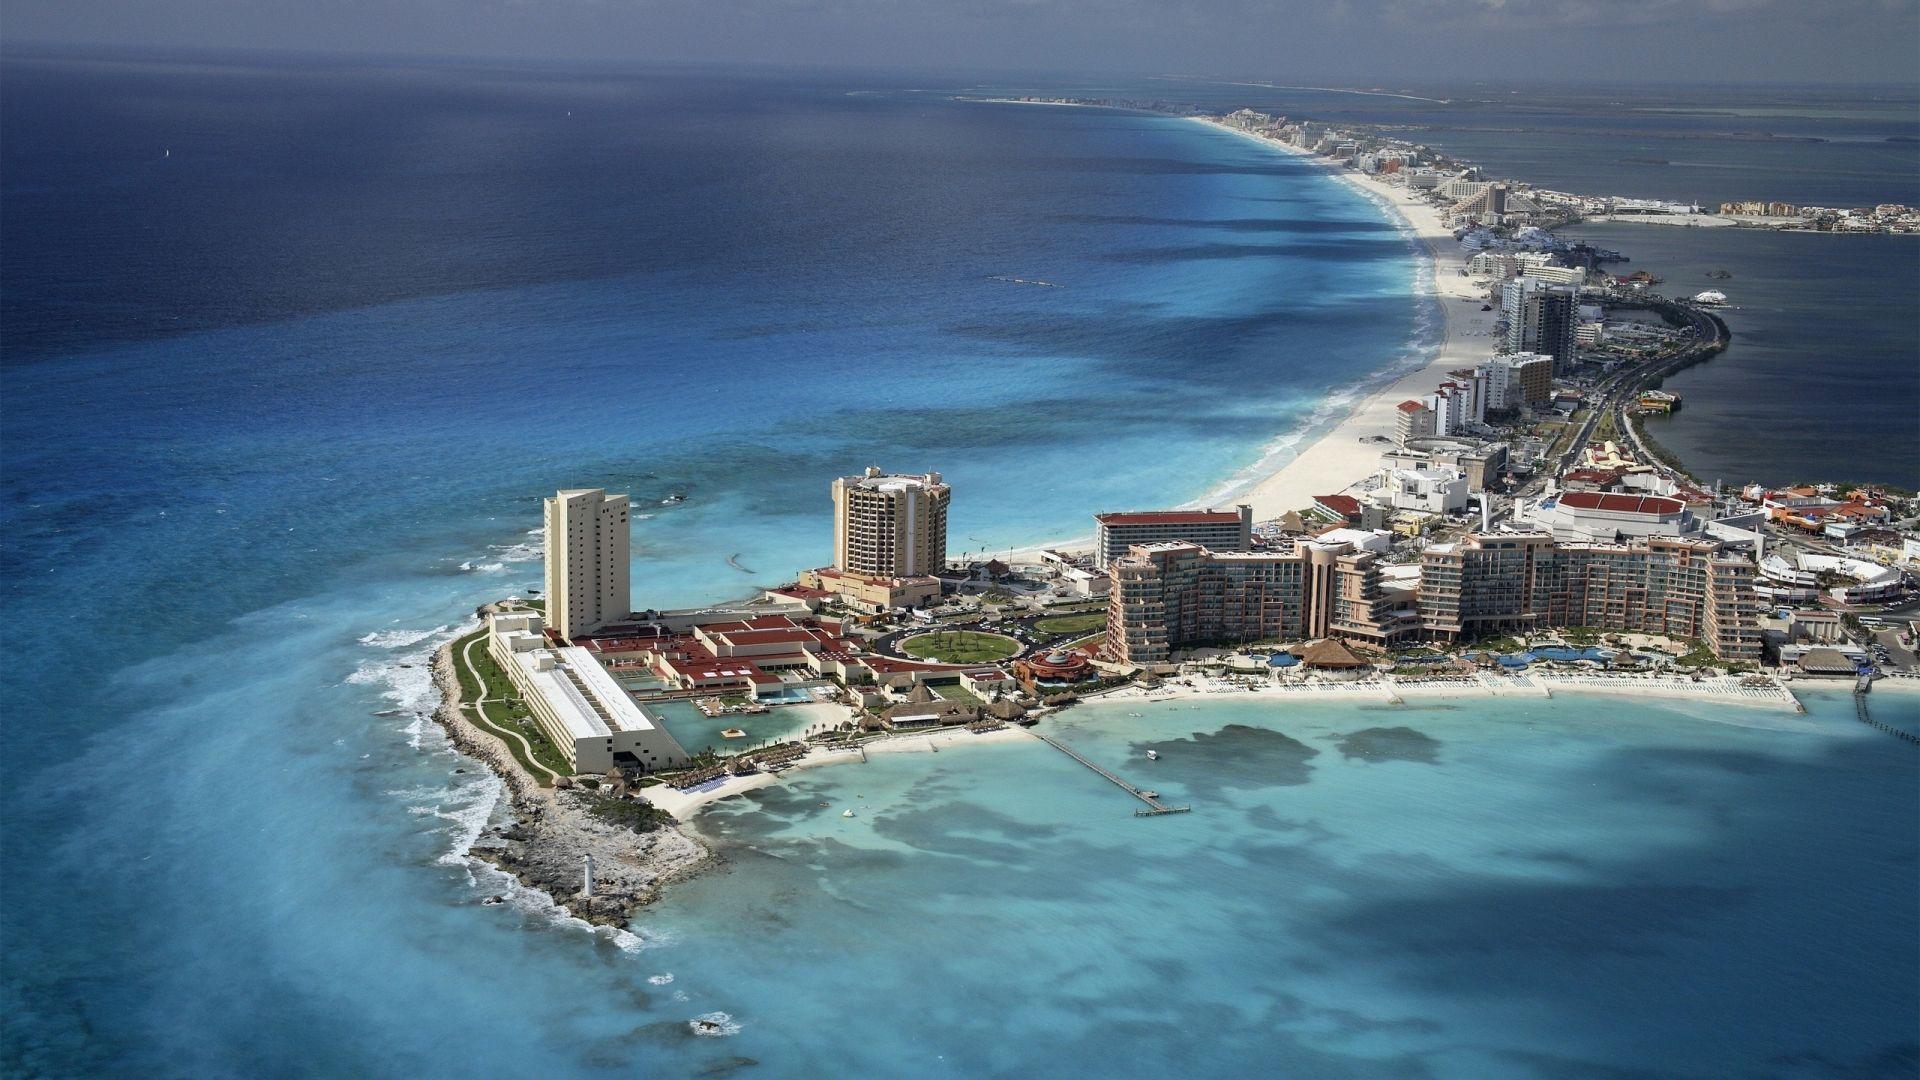 Cancun Mexico Dream Destination Wallpaper and Free Stock